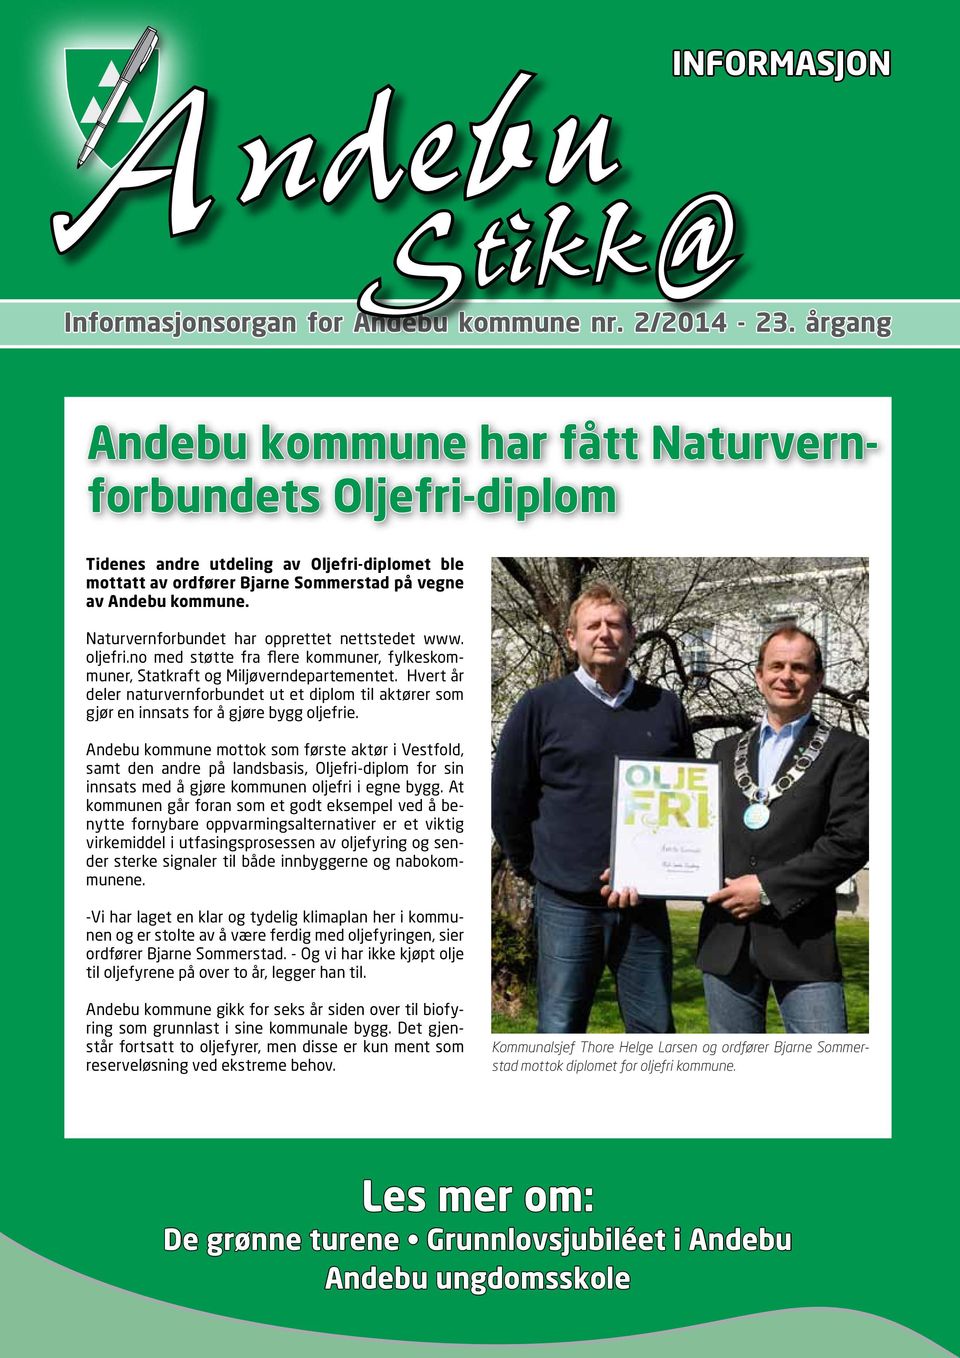 Naturvernforbundet har opprettet nettstedet www. oljefri.no med støtte fra flere kommuner, fylkeskommuner, Statkraft og Miljøverndepartementet.